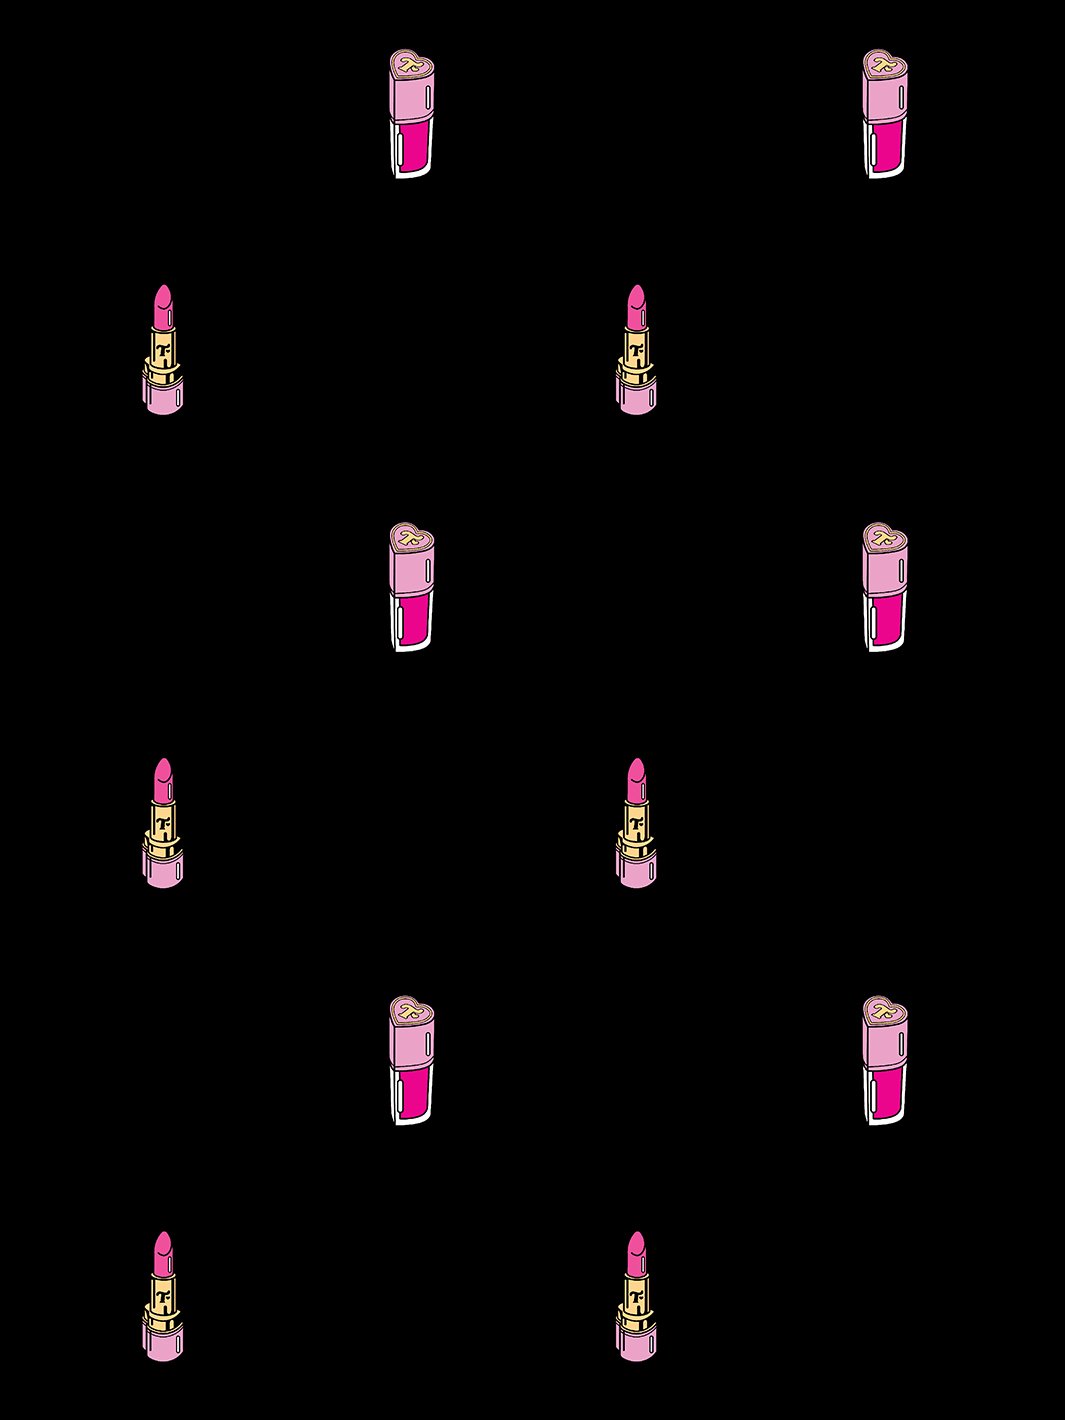 'Trixie Cosmetics' Wallpaper by Trixie Mattel - Black